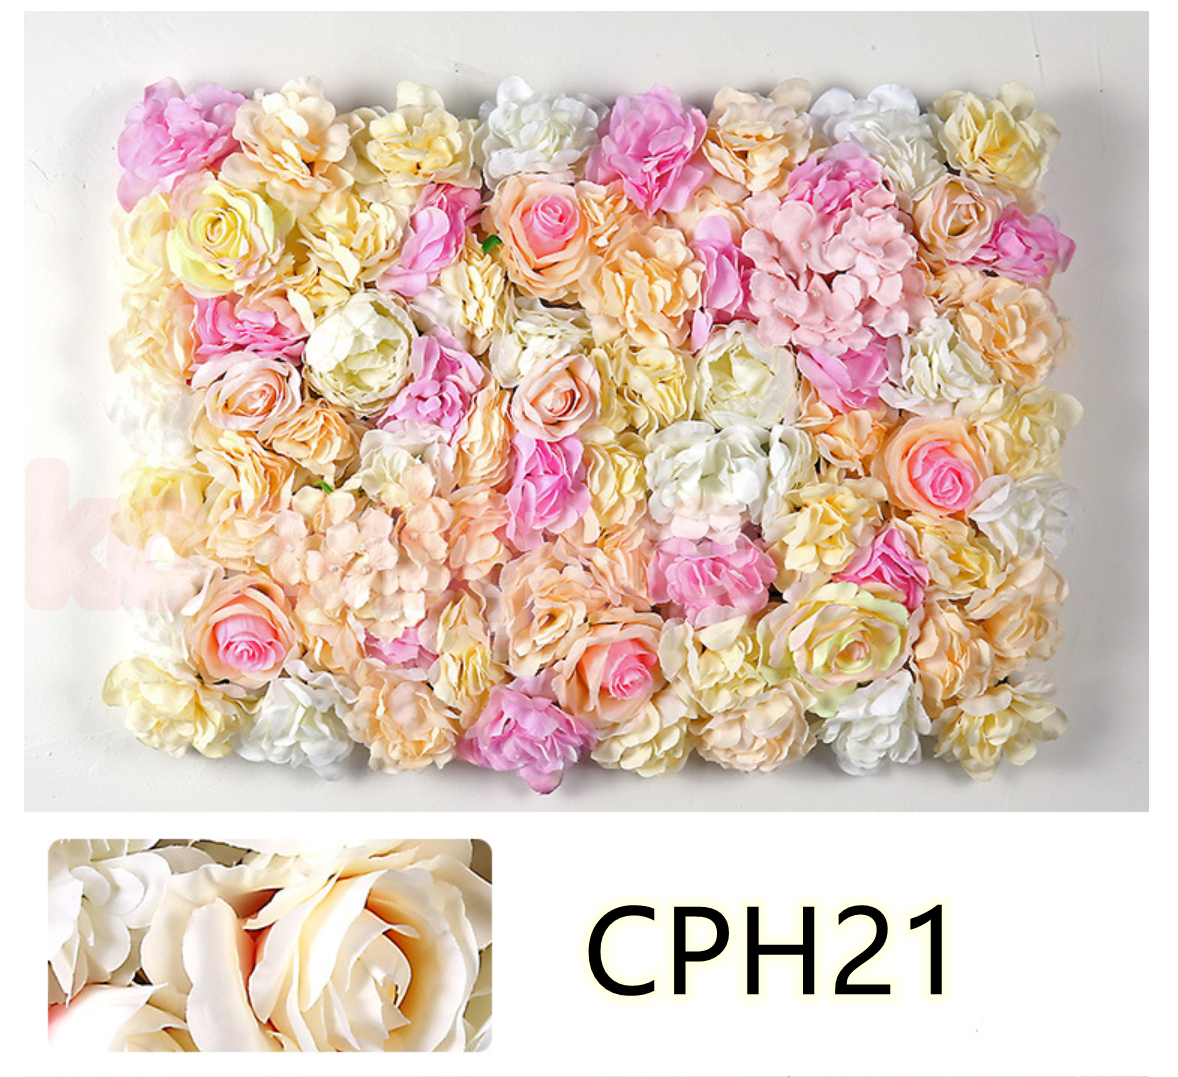 人気メーカー ブランド 背景装飾のための美しい花の壁 背景装飾t2cp73 耐久性 花柱装飾 装飾 会場 結婚式 壁装飾 人工花の壁 40cm 約60 シルクフラワー アレンジメント